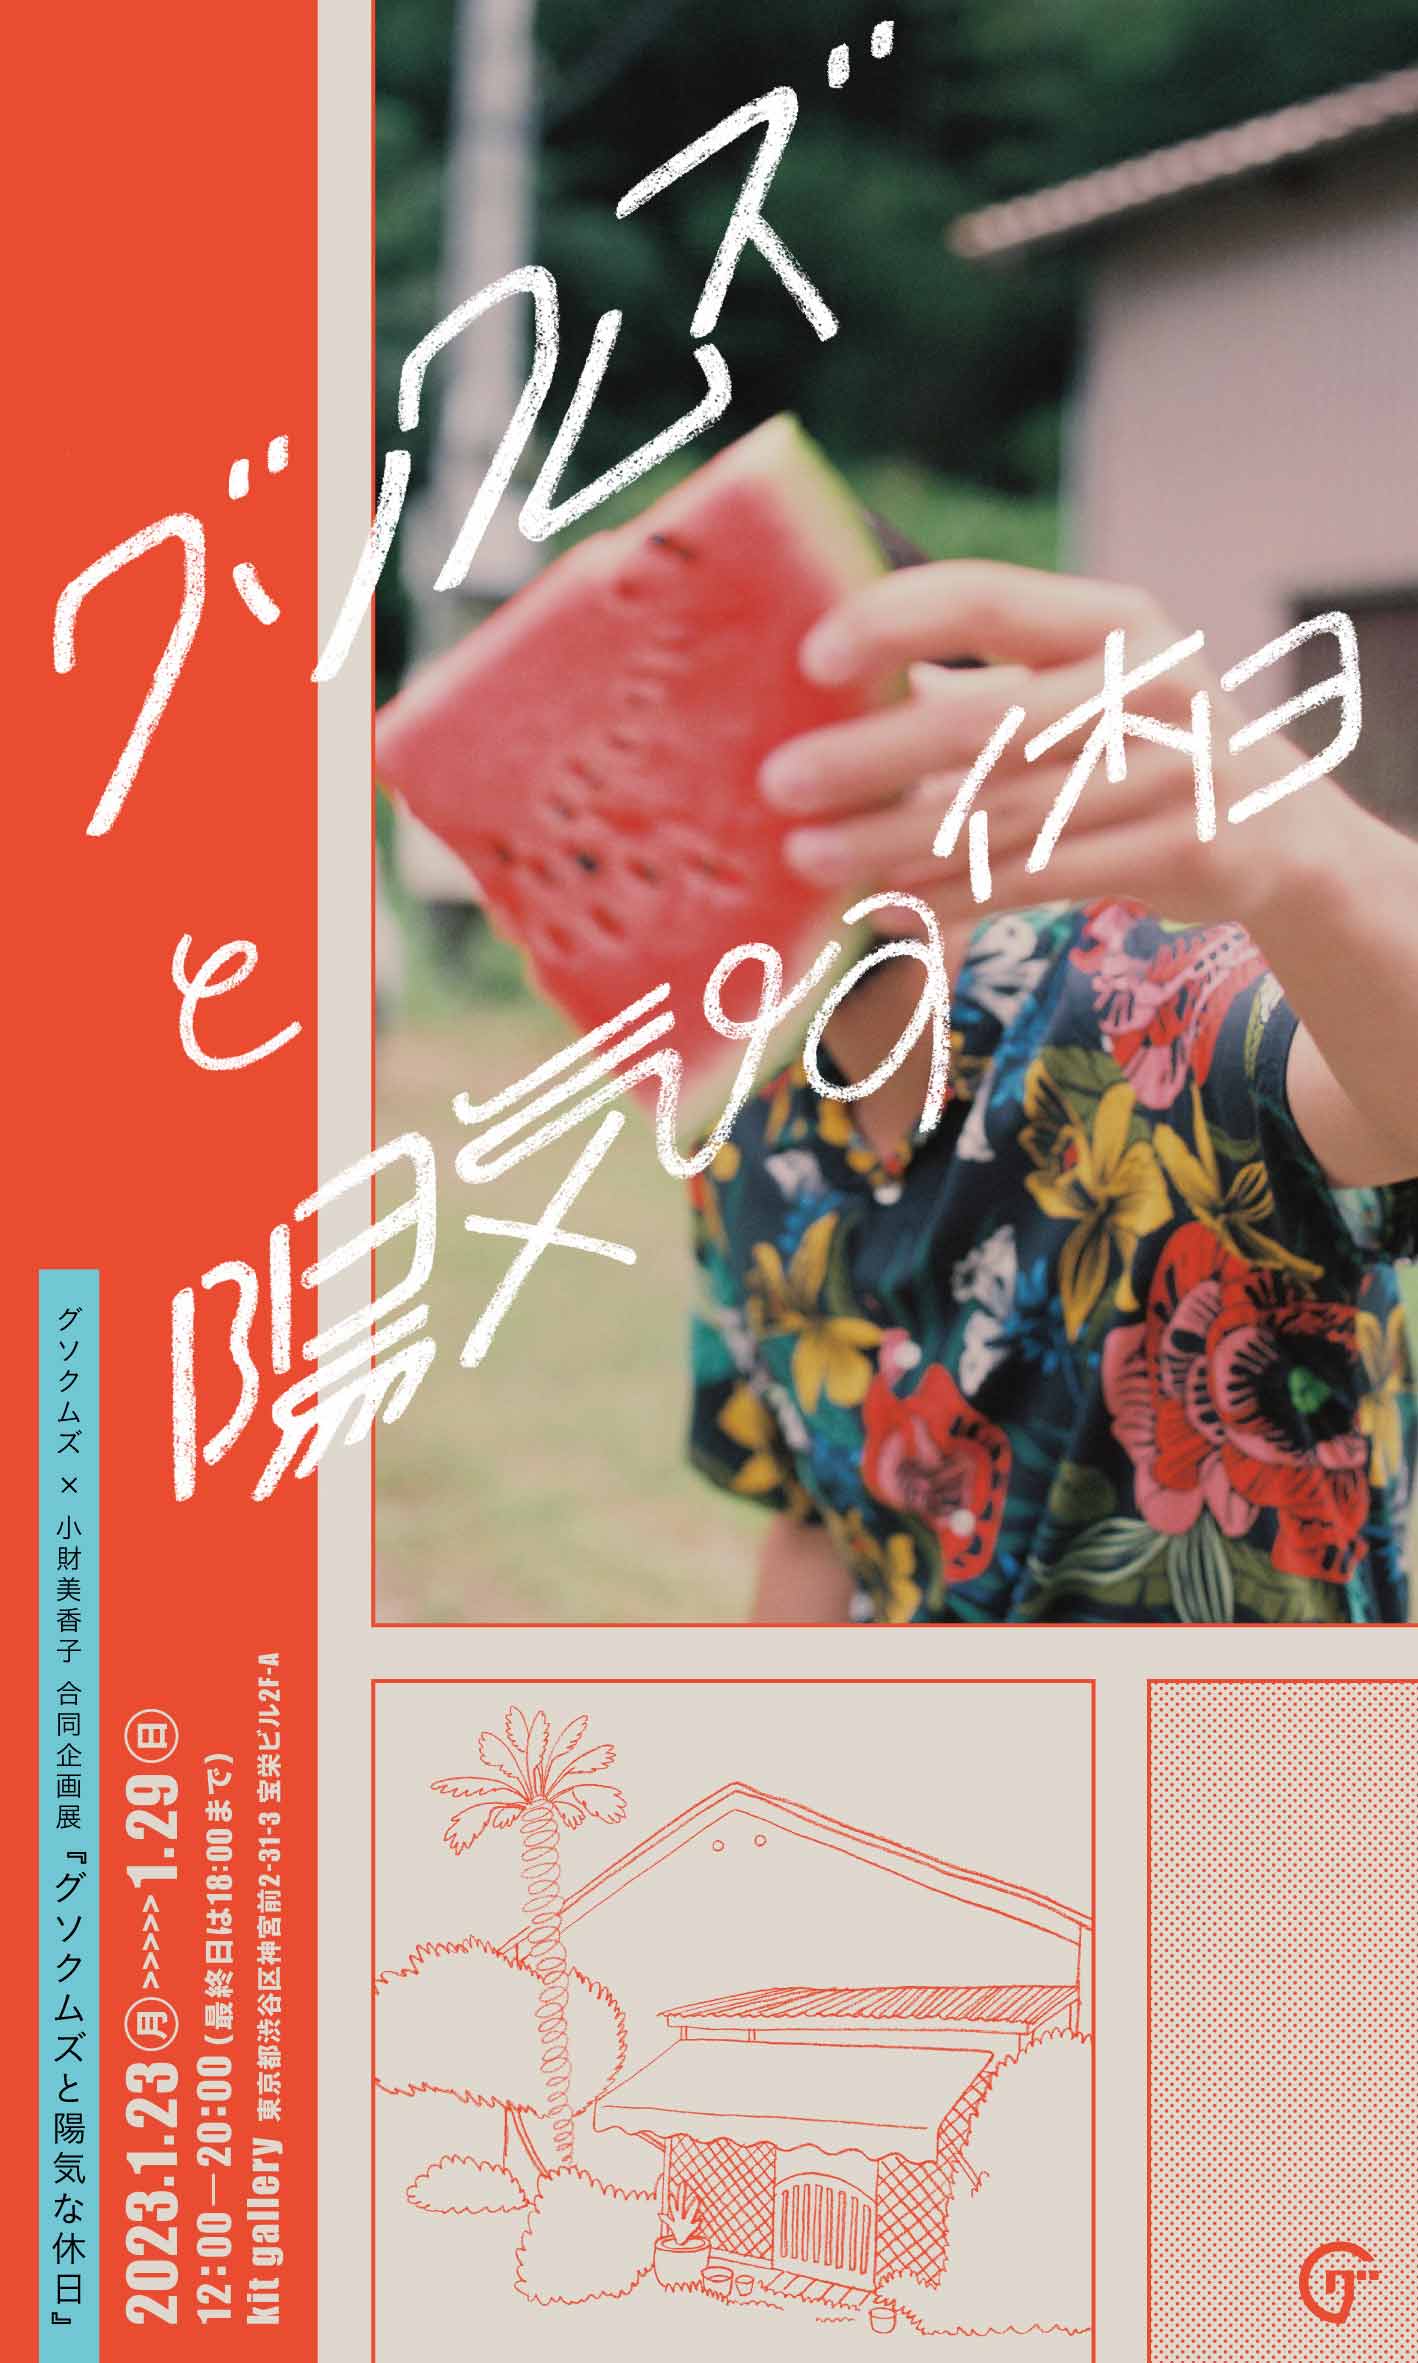 グソクムズ 1stアルバム 限定アナログ•レコード盤 - レコード